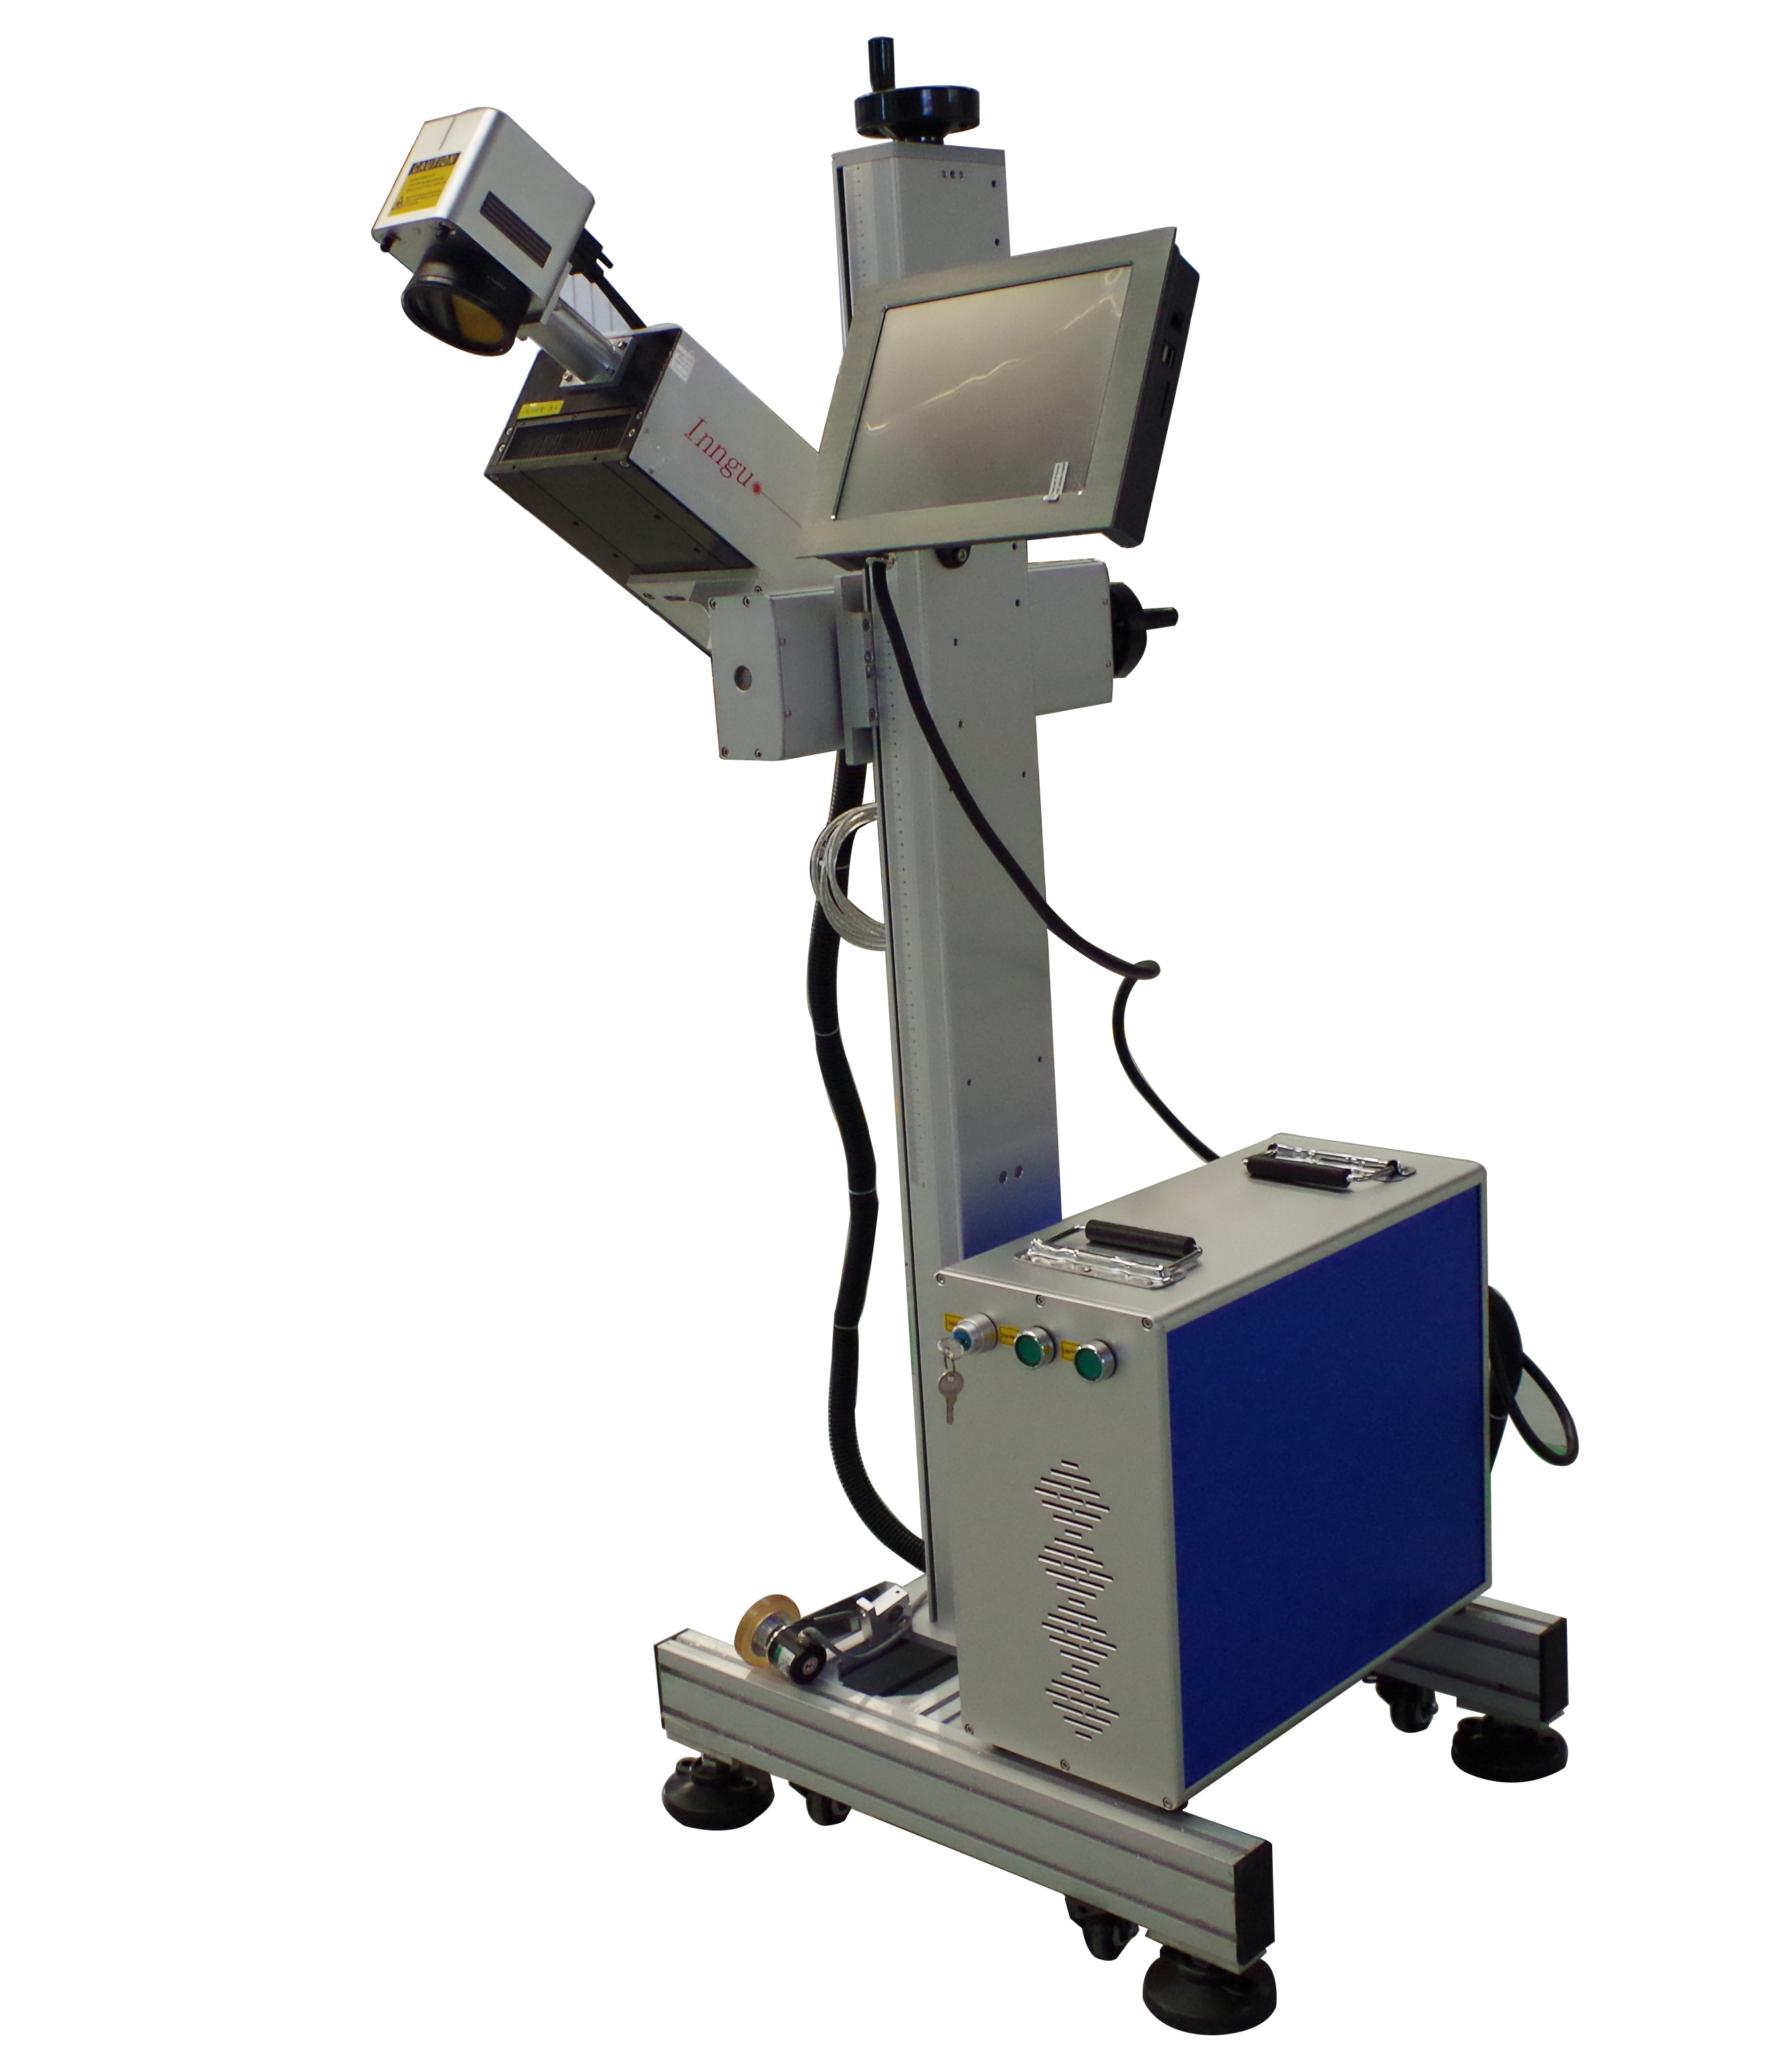 آلة الوسم بالليزر بالأشعة فوق البنفسجية 3 وات/5 وات مع نظام تغذية تلقائي للأجزاء الصغيرة جدًا والزجاجات الزجاجية ووضع العلامات البلاستيكية